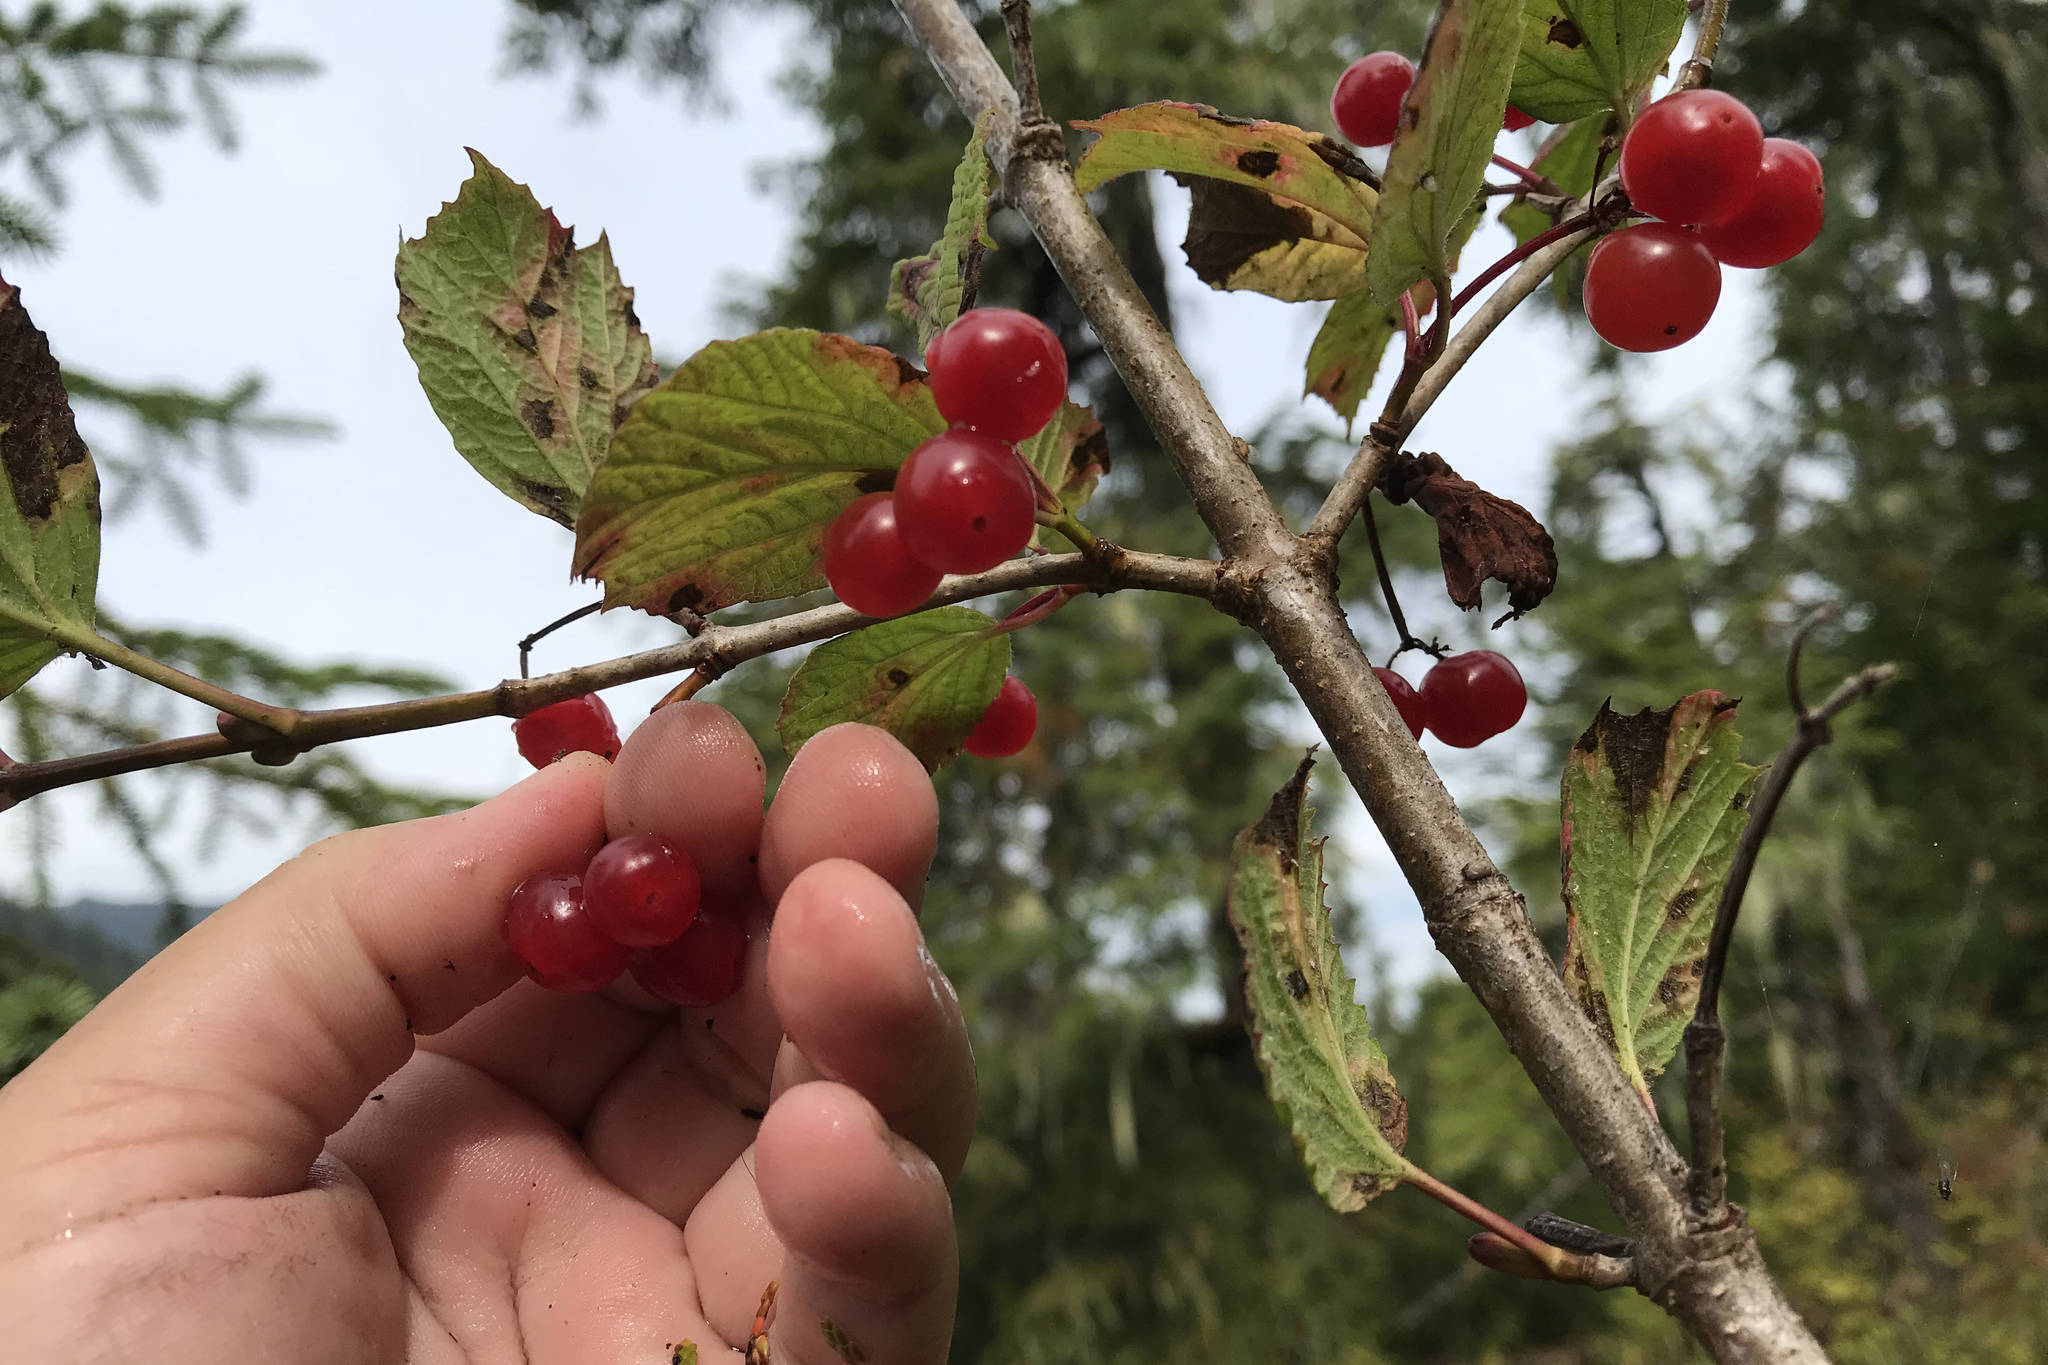 Planet Alaska: Highbush Cranberries and Traditional Values